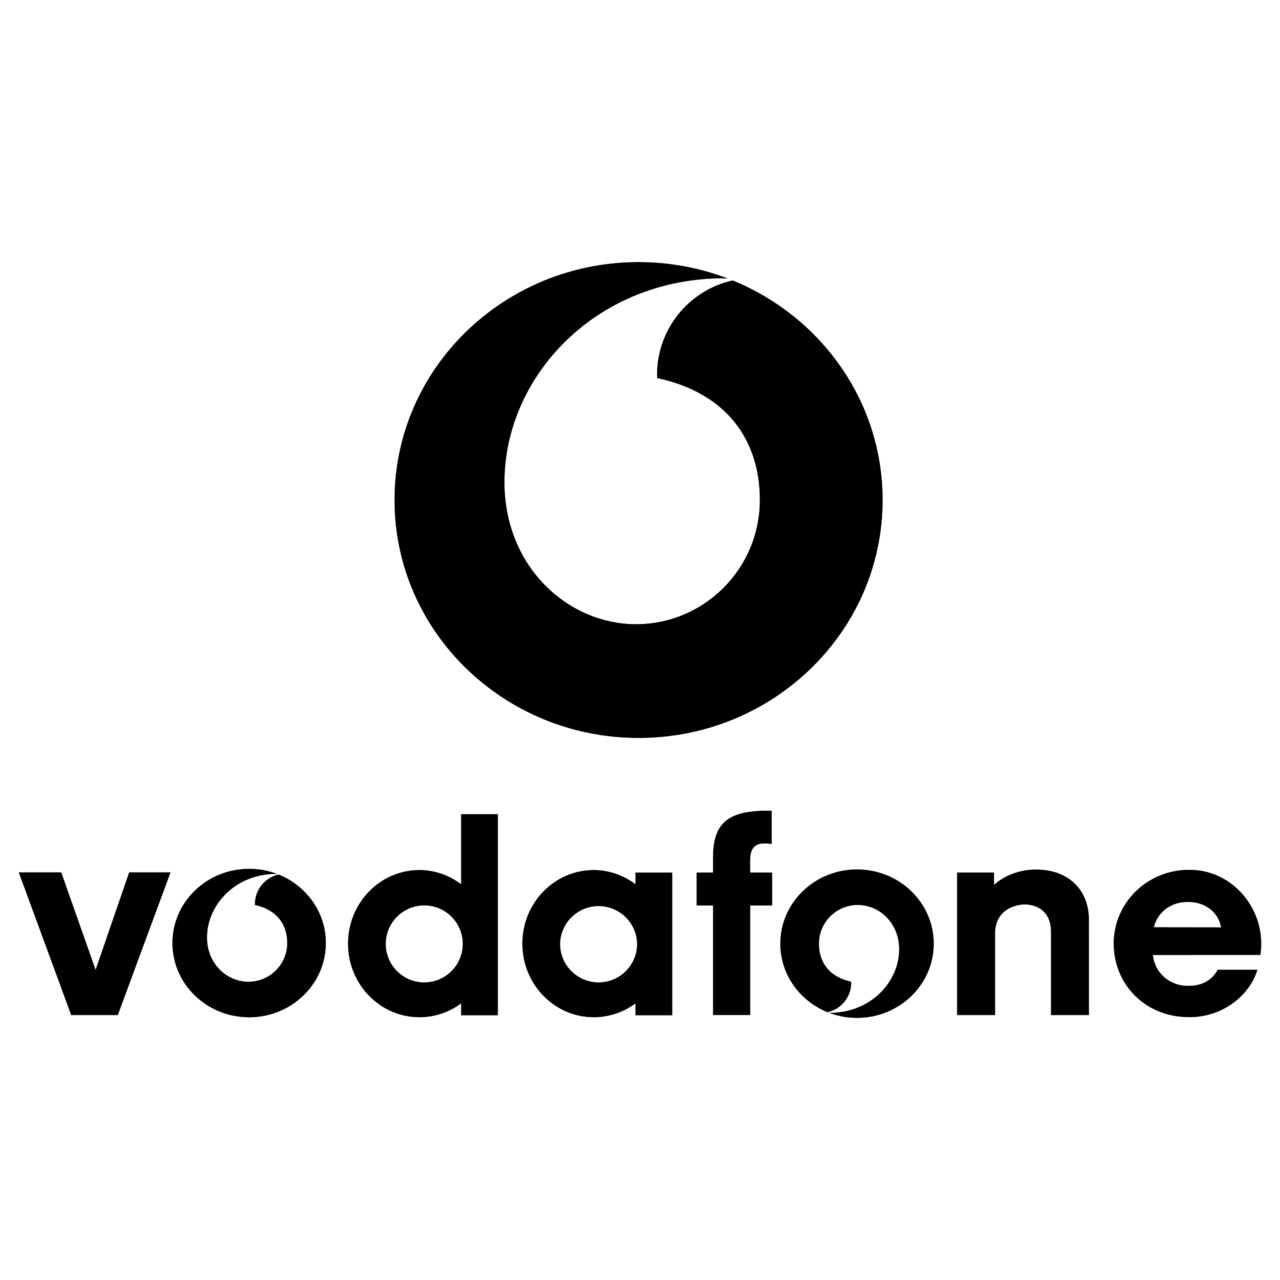 Vodafone logo in black 